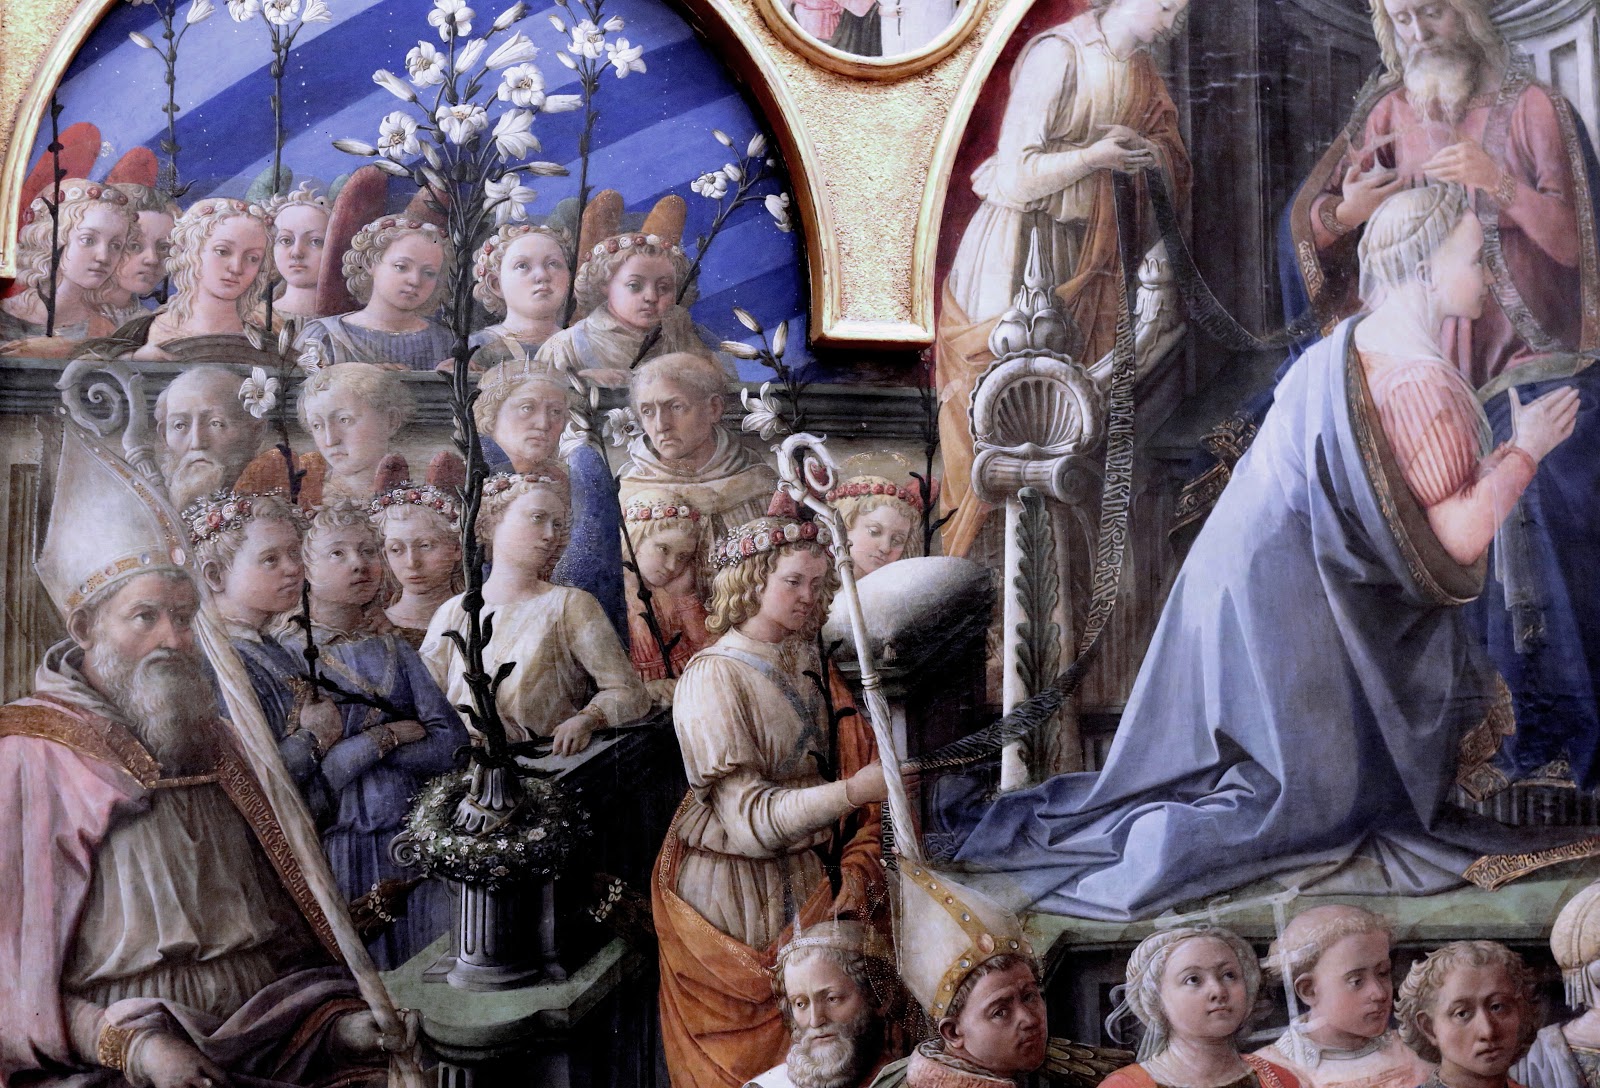 Filippino+Lippi-1457-1504 (121).jpg